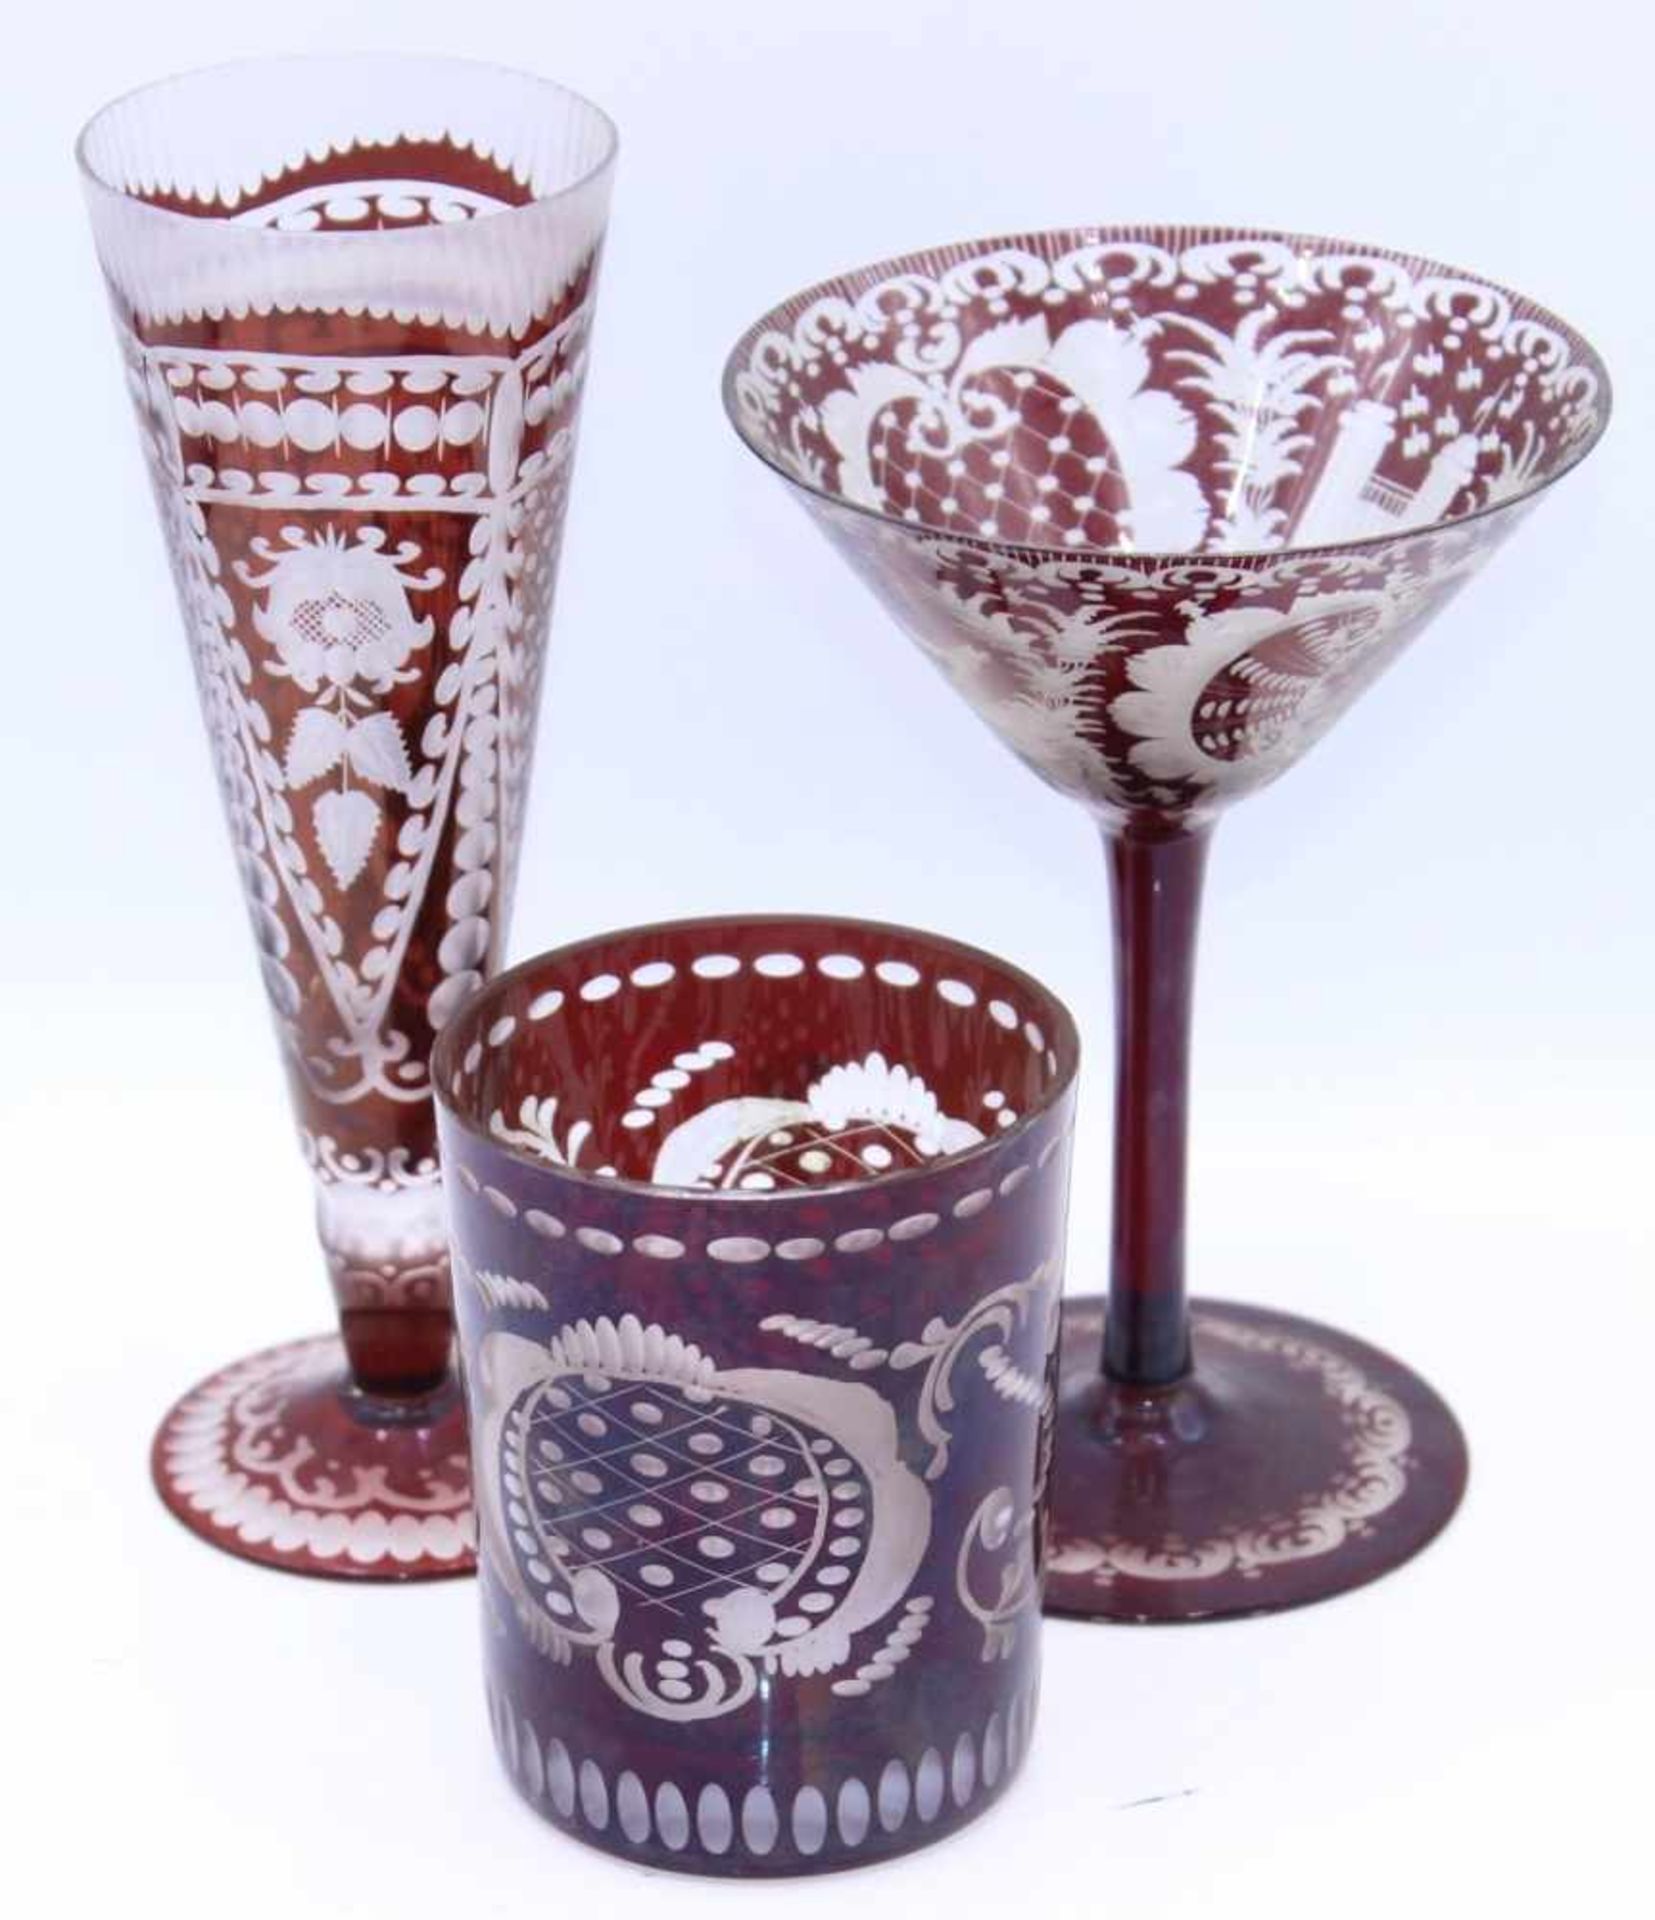 Lot Gläser - Böhmen 20.Jahrhundert farbloses Glas rubinrot überfangen, geschnittenes und geätztes